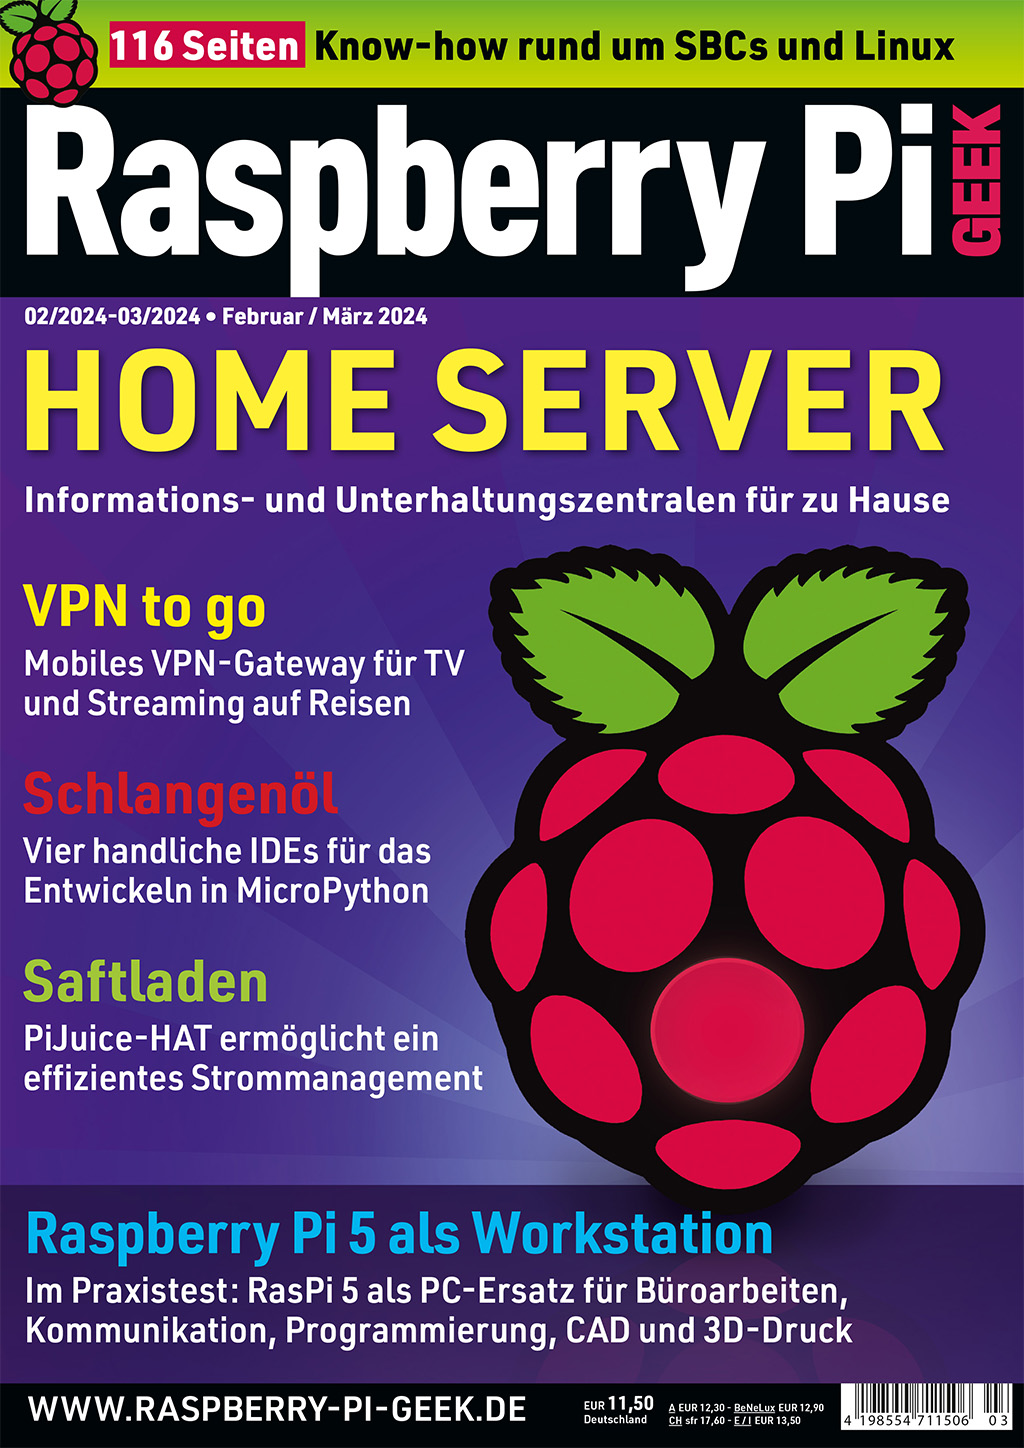 Raspberry Pi Geek 03/2024 